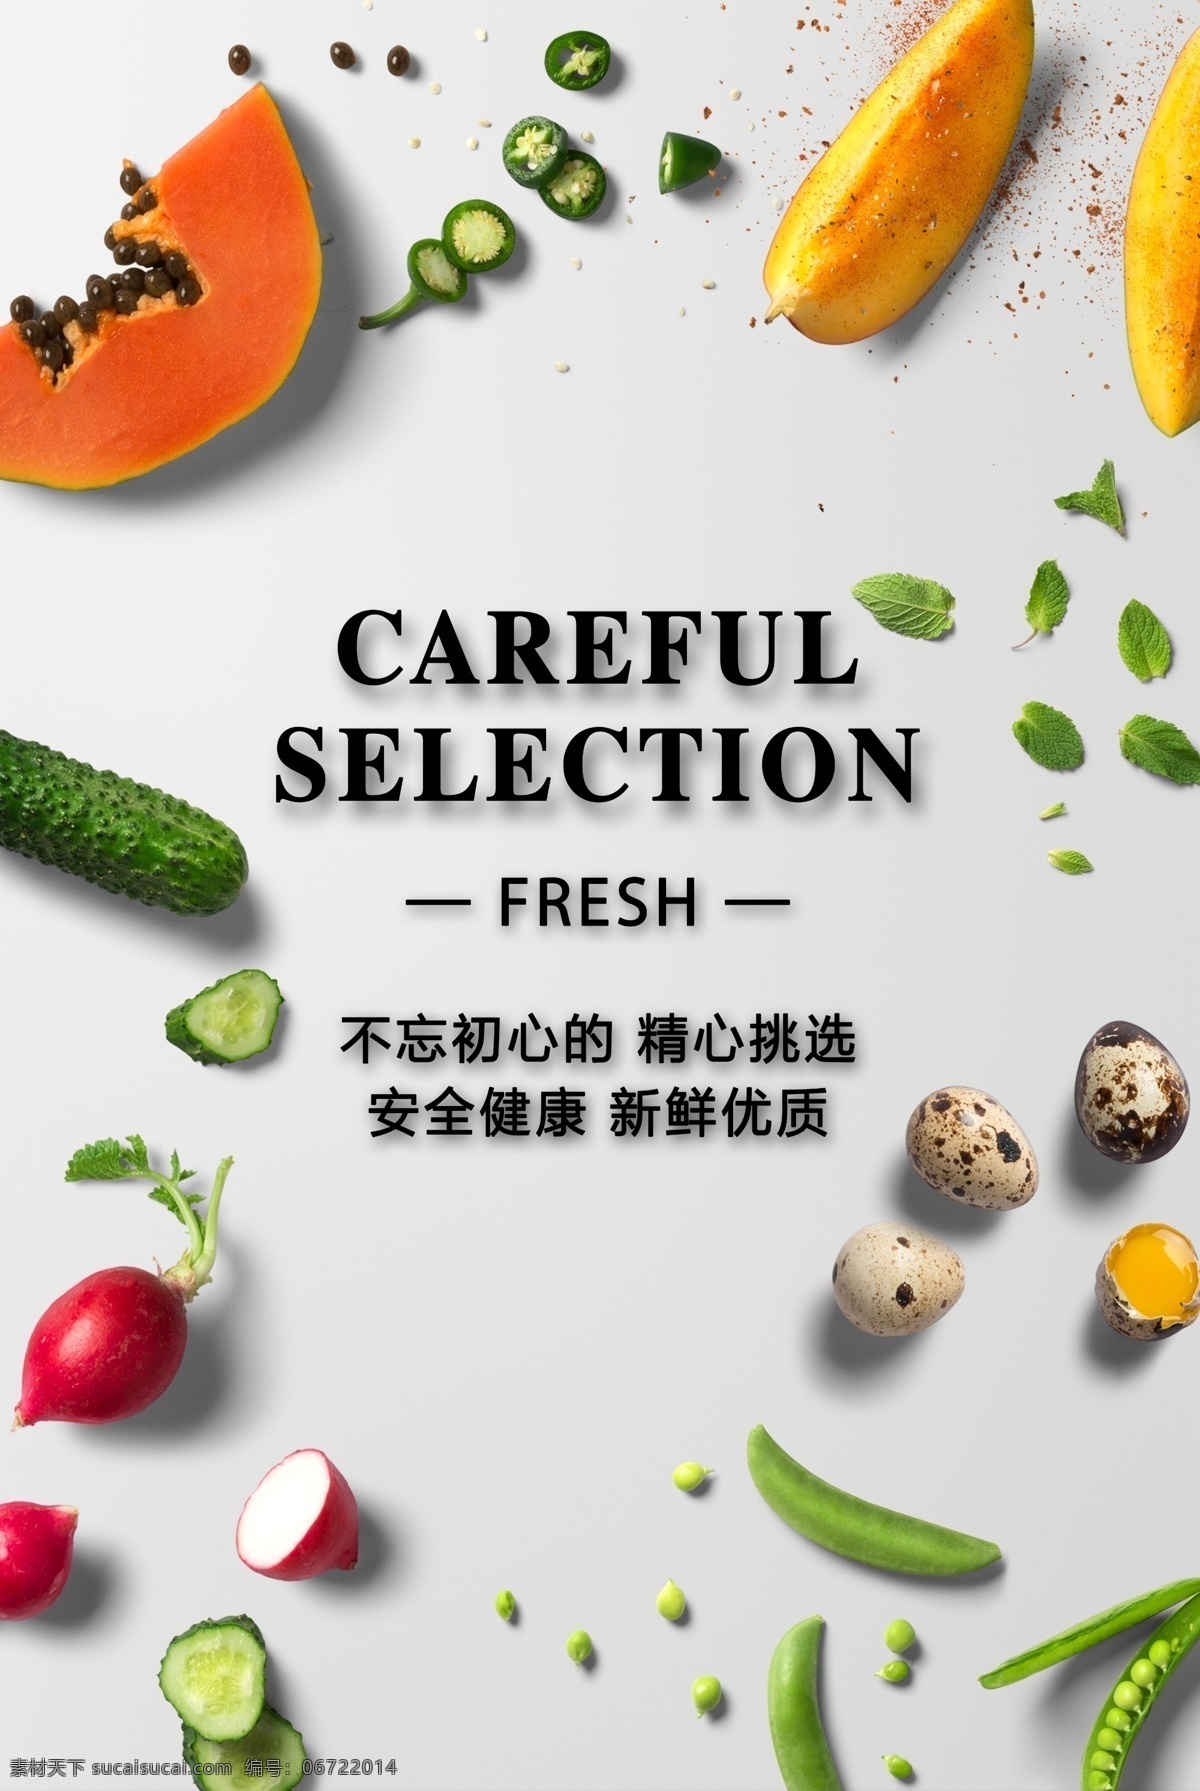 3d 效果 蔬菜 海报 立体海报 3d效果 水果蔬菜海报 超市海报 走廊挂画 广告画面 免抠蔬果素材 分层果蔬素材